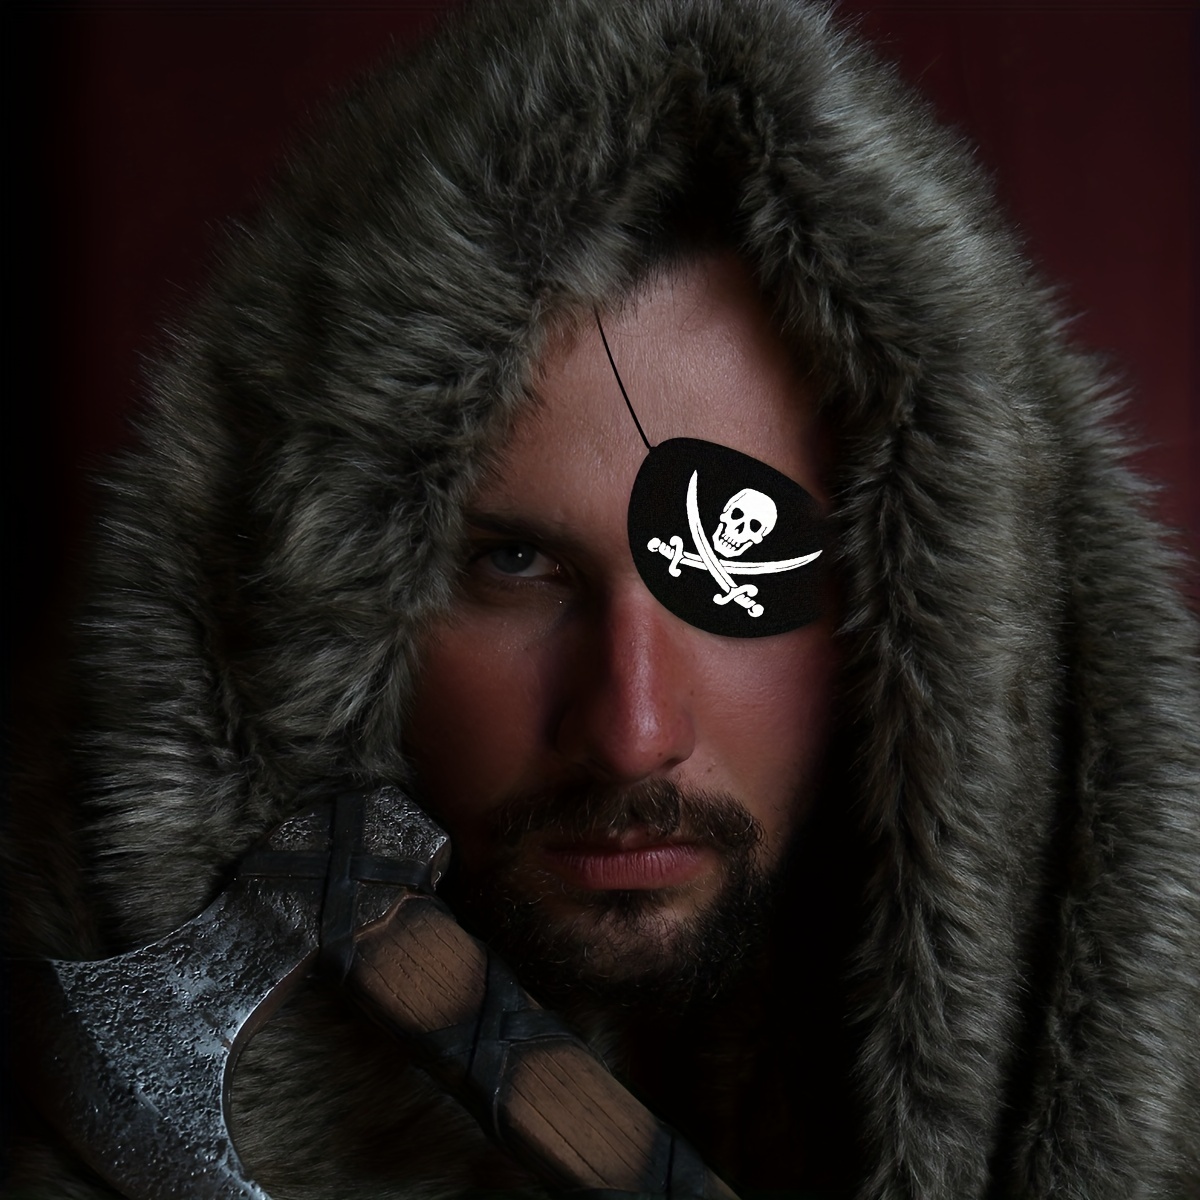 Pañuelo pirata adulto: Accesorios,y disfraces originales baratos - Vegaoo